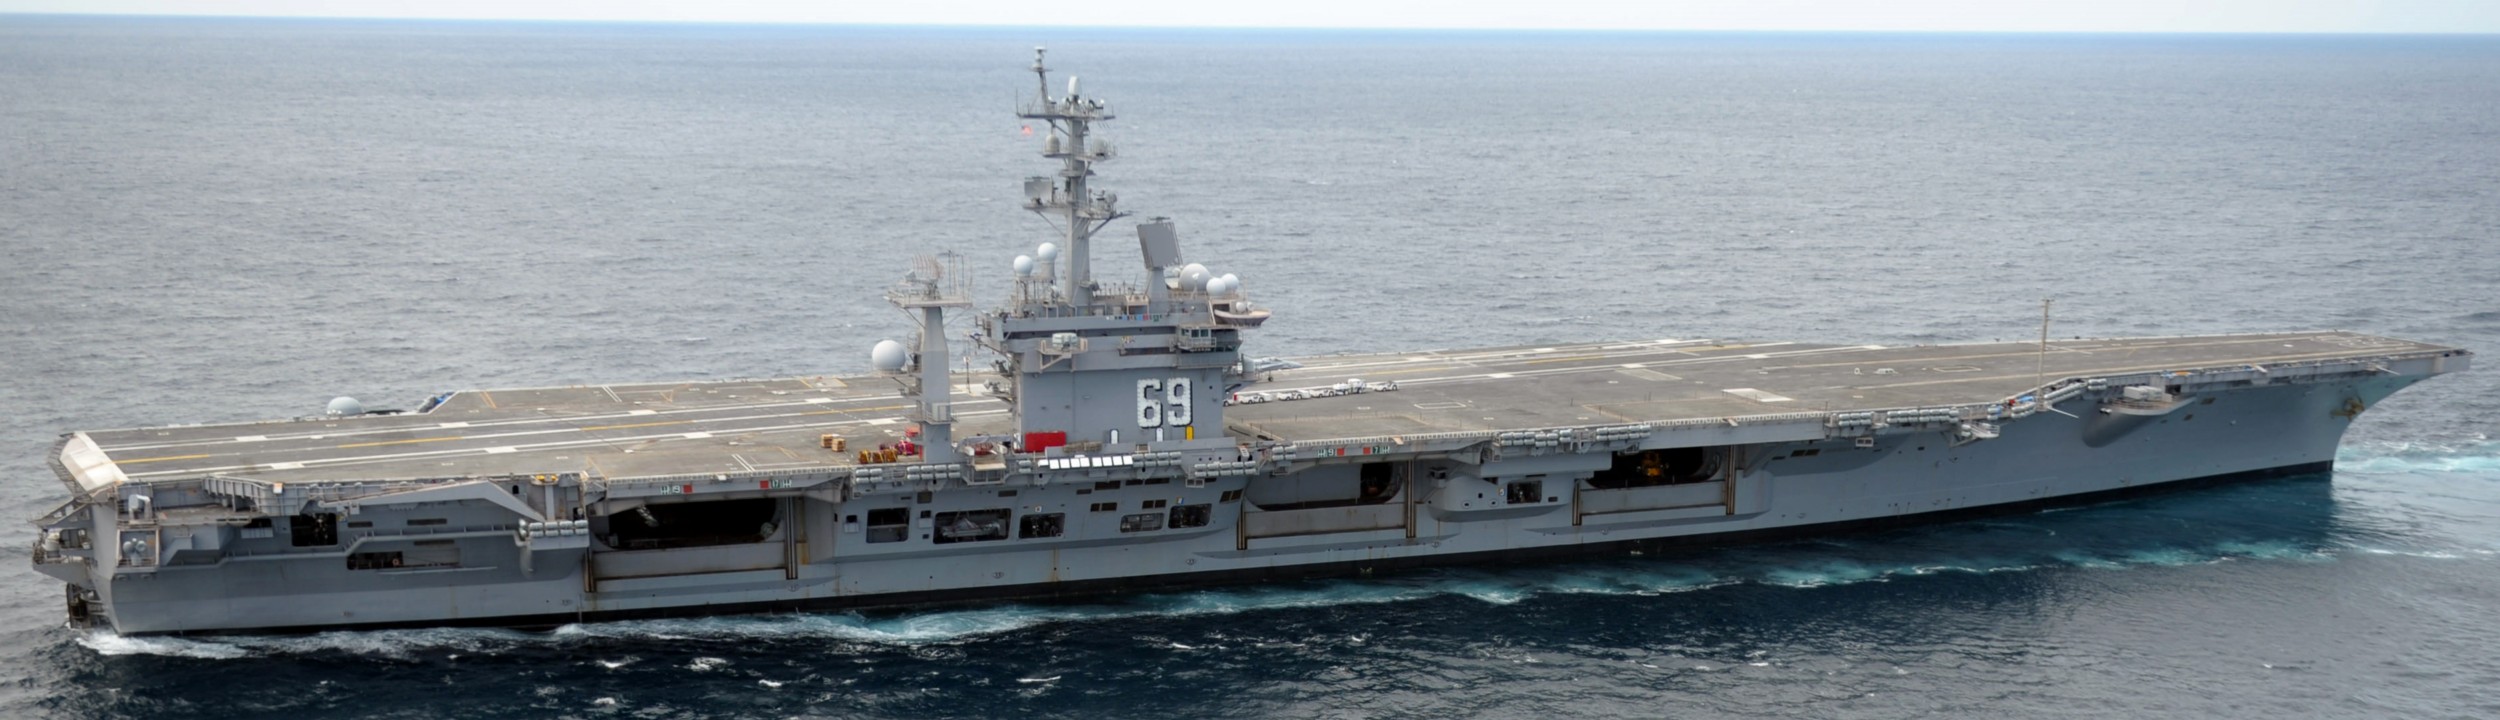 uss dwight d. eisenhower cvn-69 aircraft carrier 2011 145